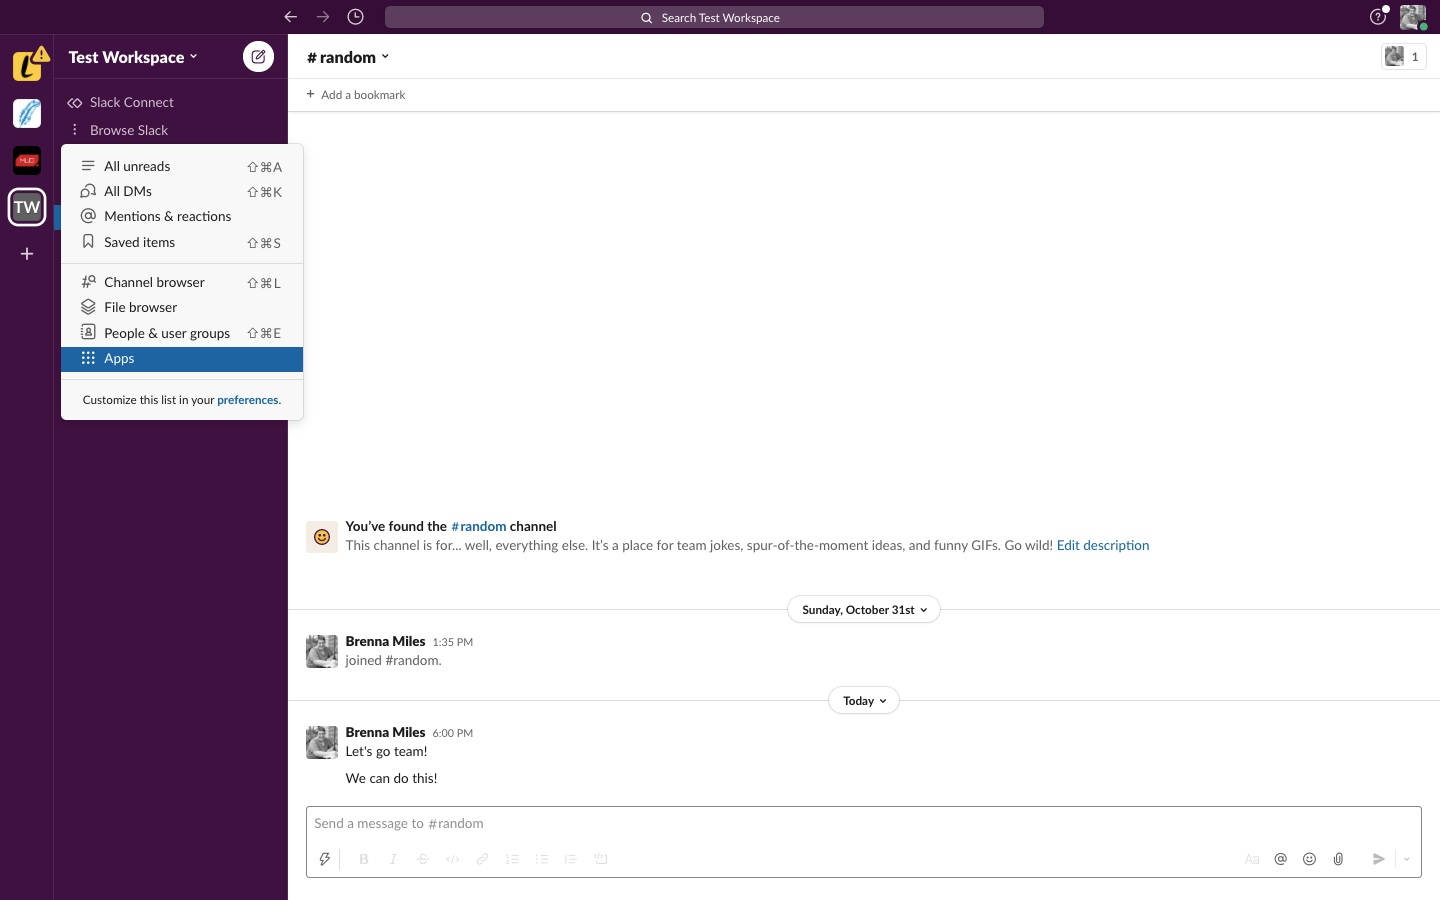 Image shows a team chat inside Slack